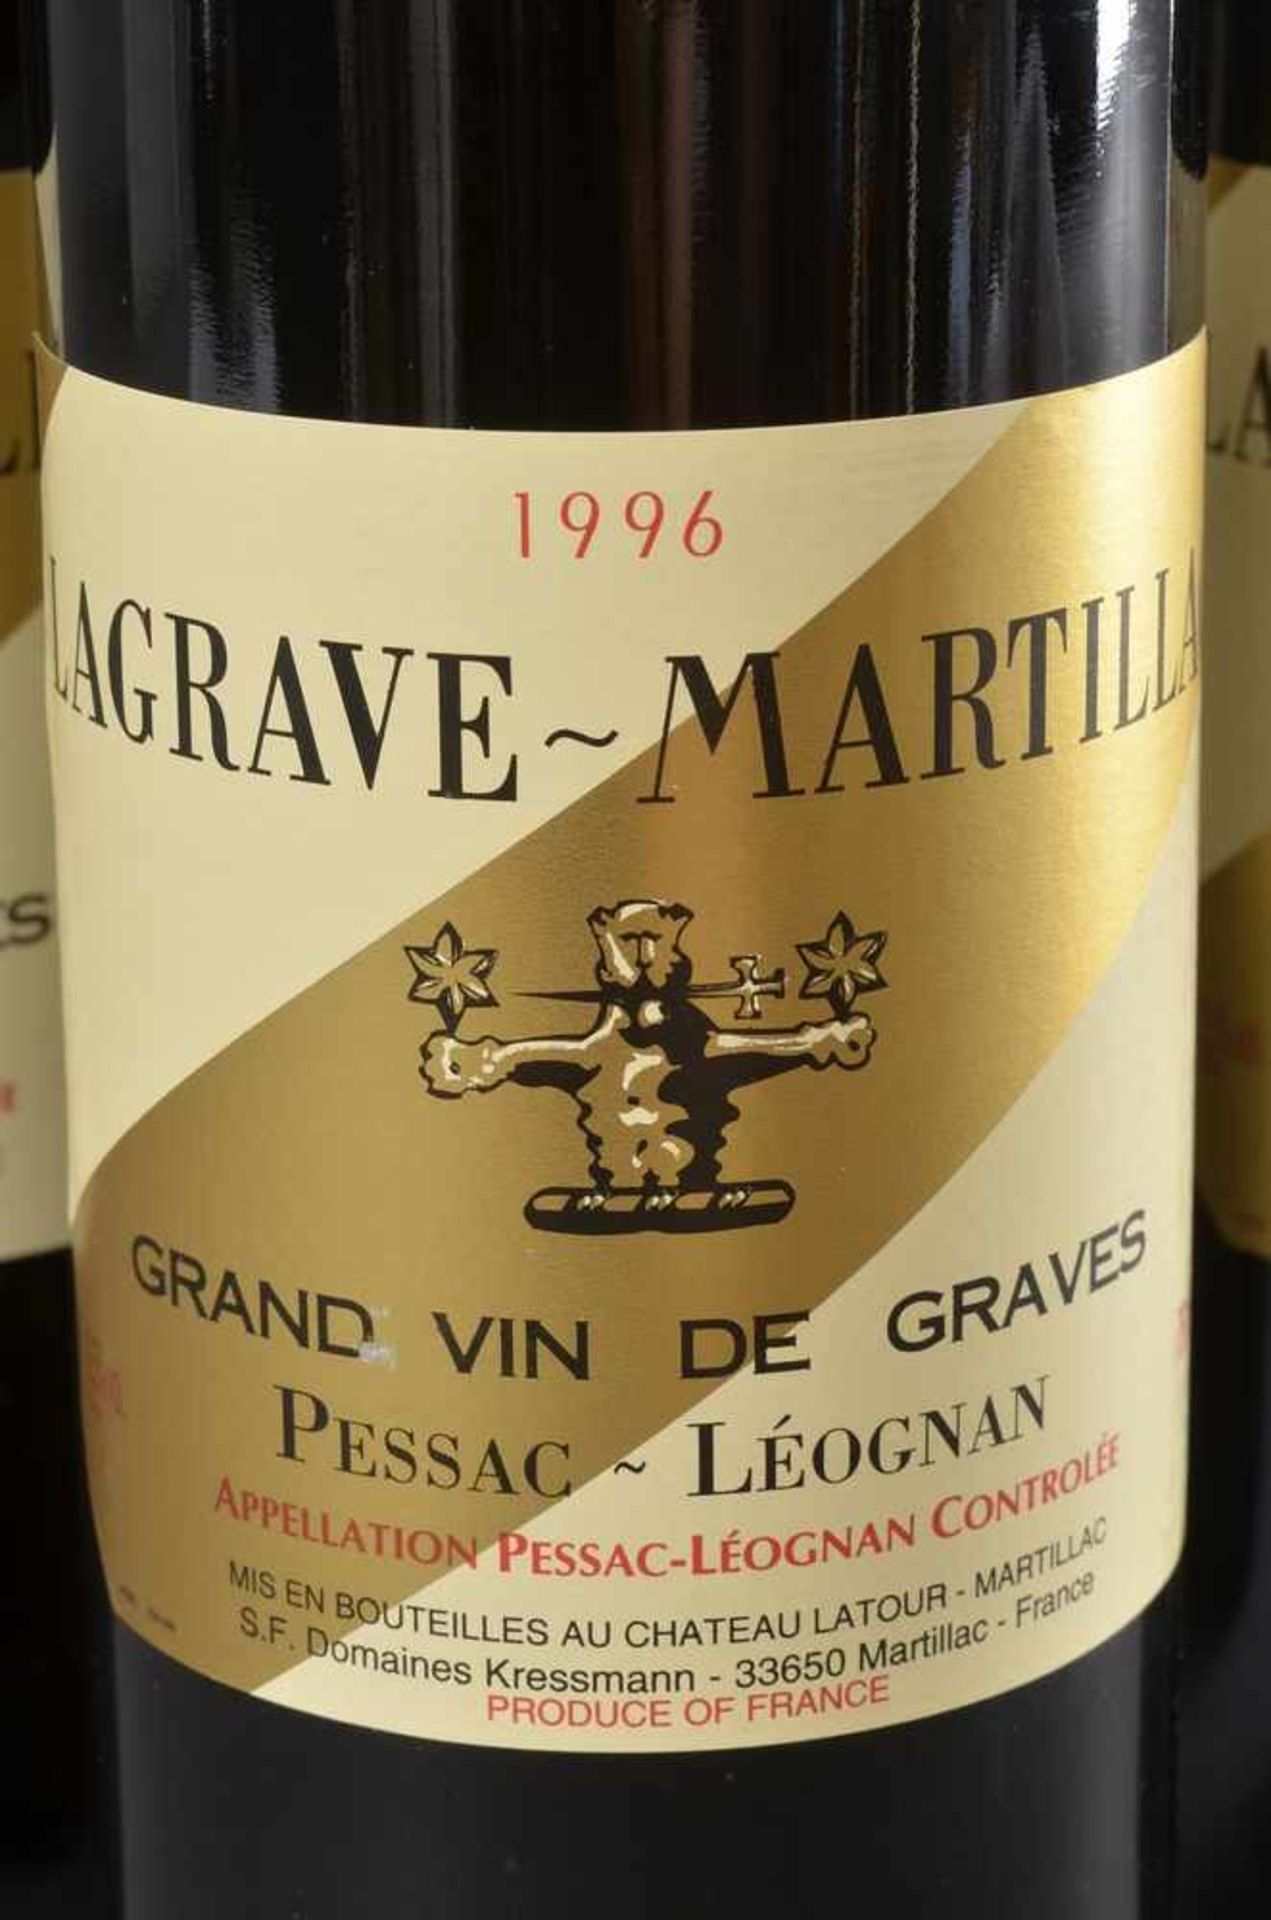 6 Flaschen 1996 Lagrave-Martillac, Pessac-Leognan, Bordeaux Rotwein, Schlossabzug Chateau Latour, - Bild 2 aus 4